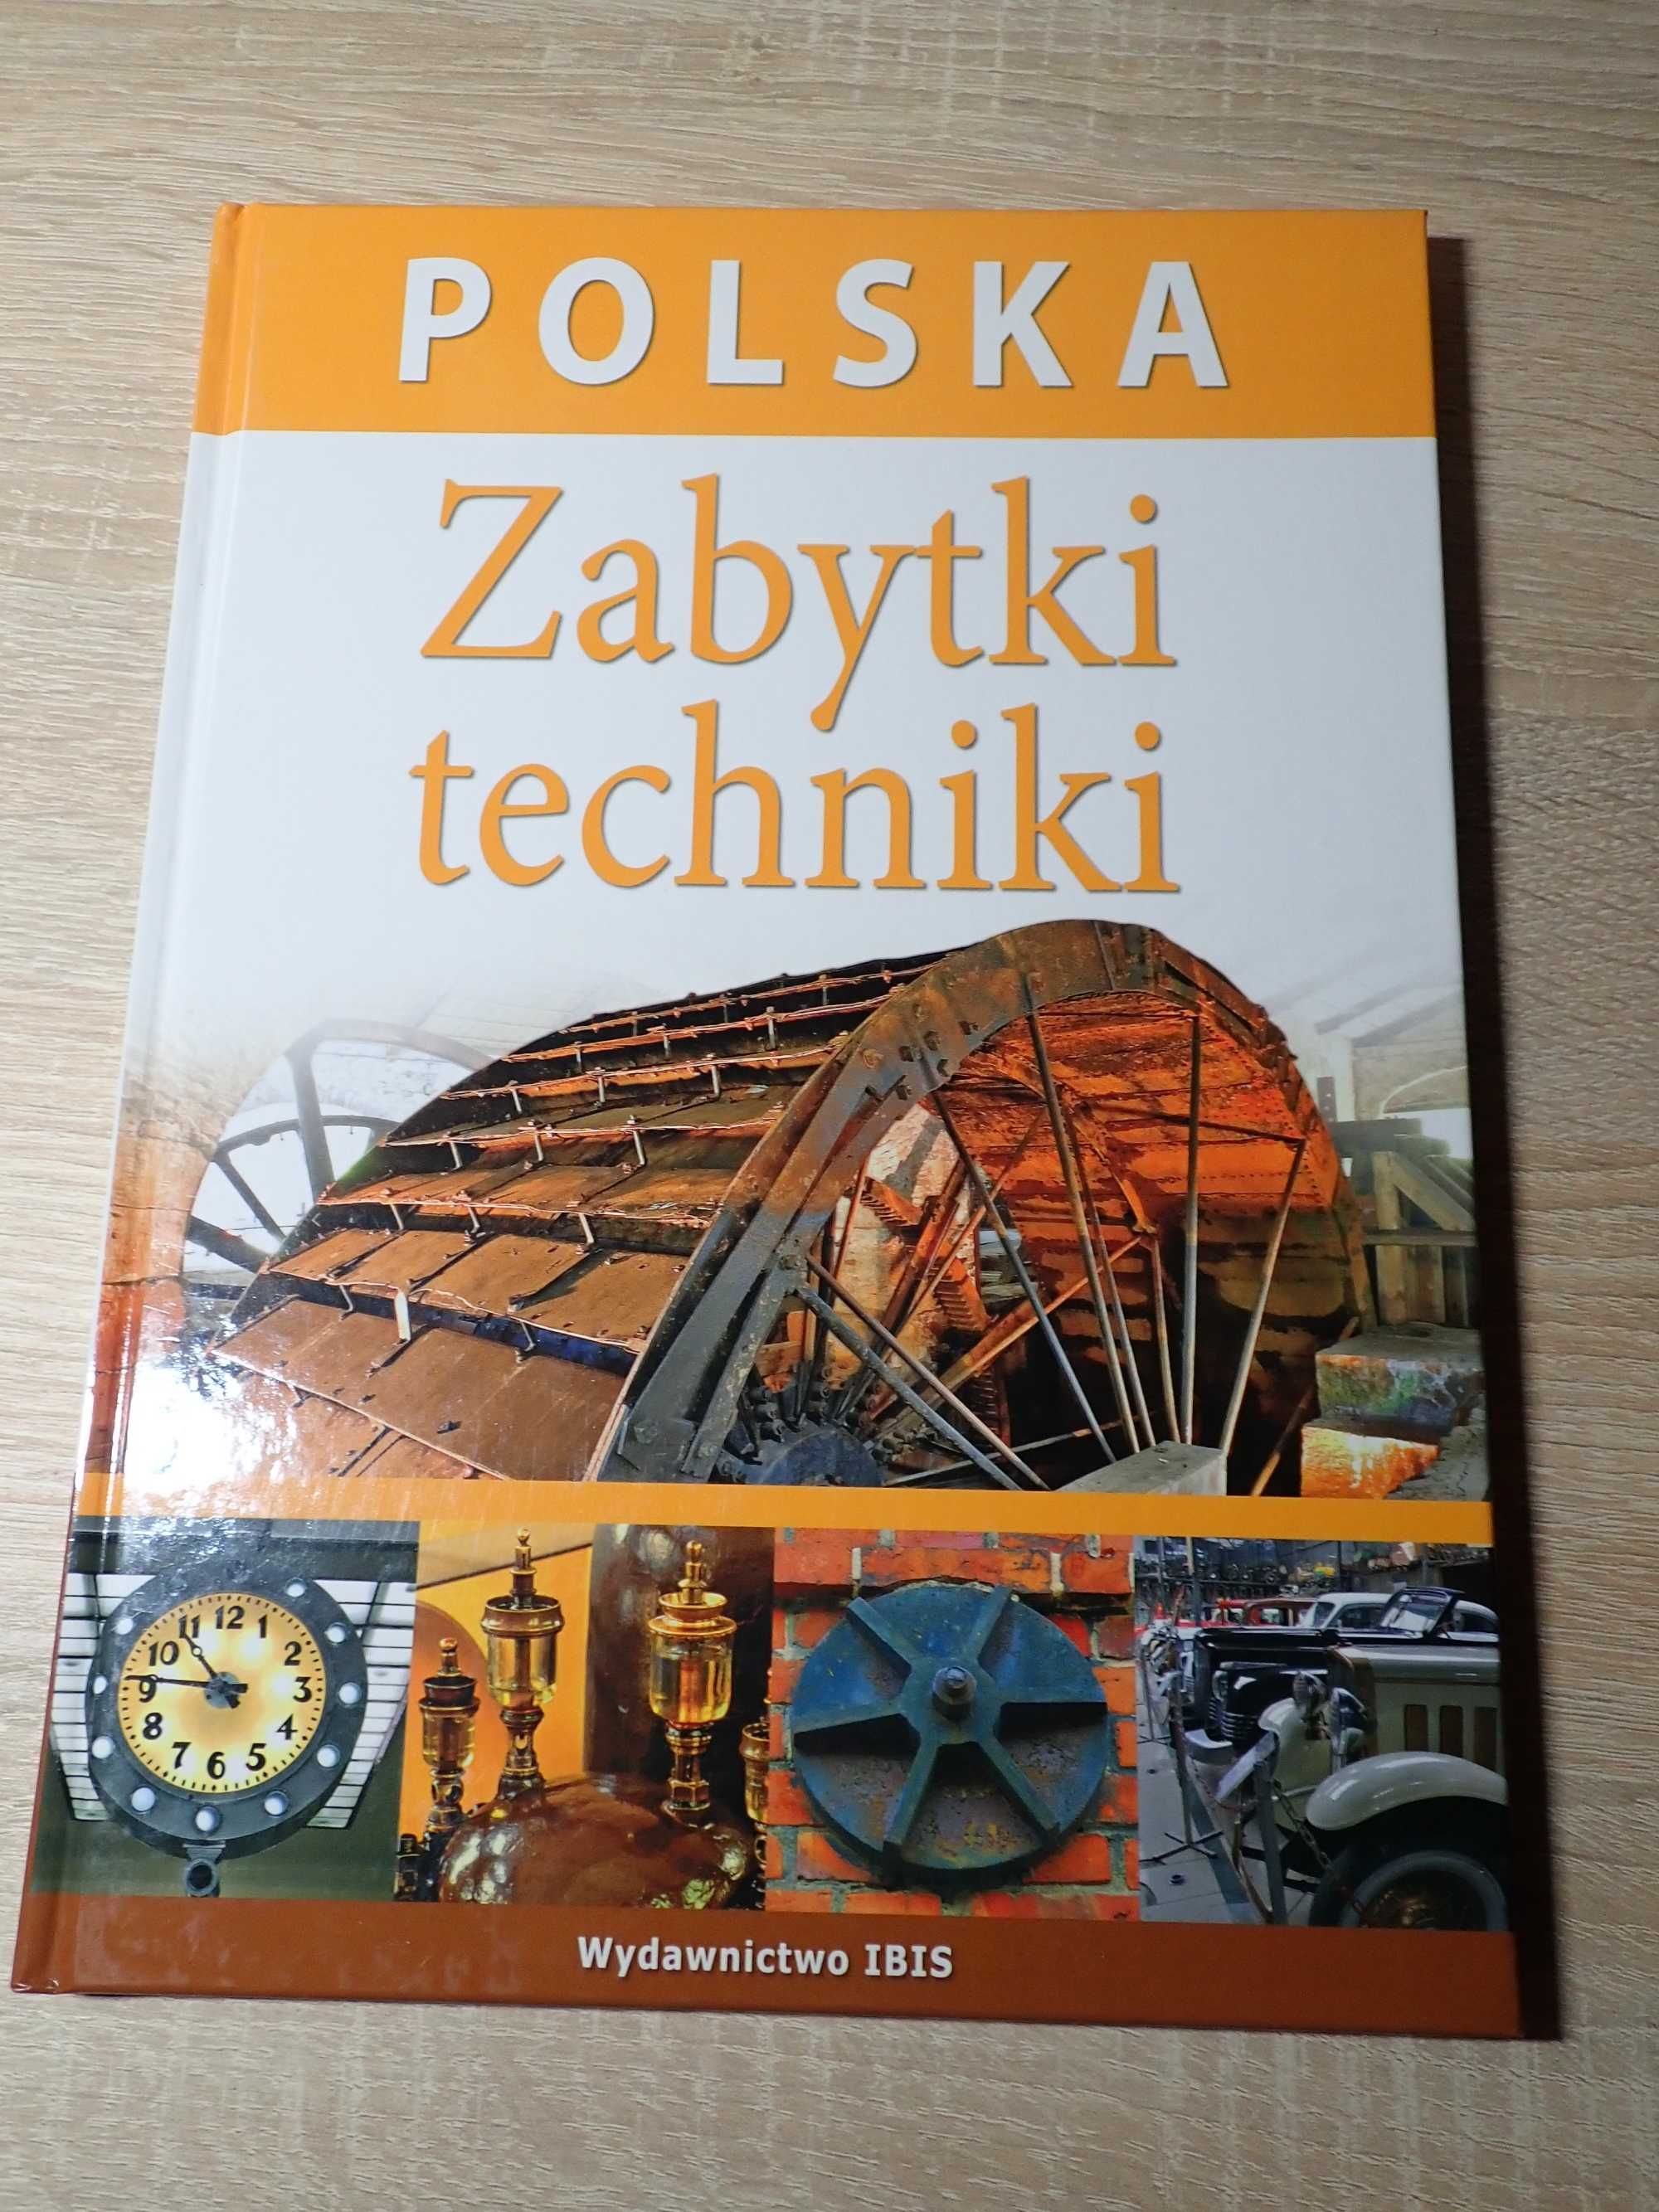 Polska Zabytki techniki album turystyka